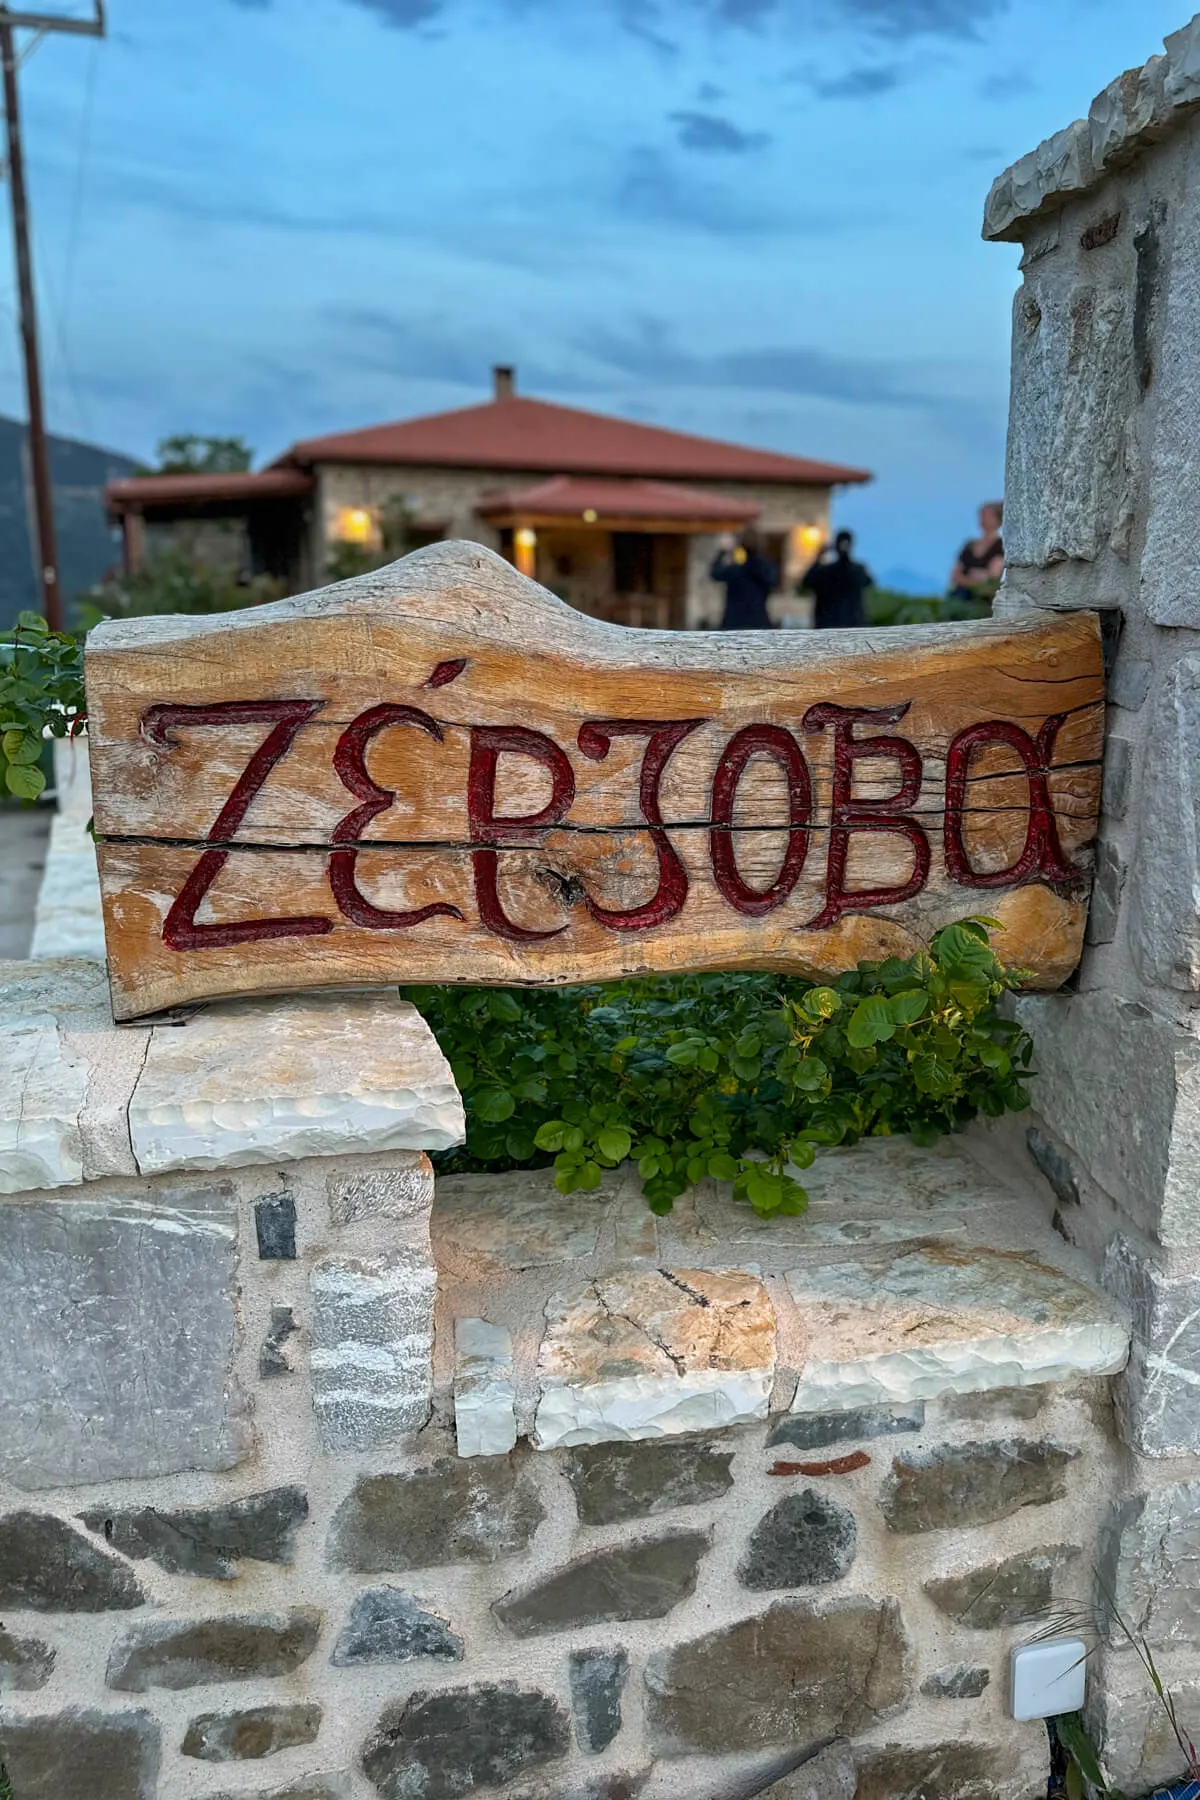 Zerzova Restaurant